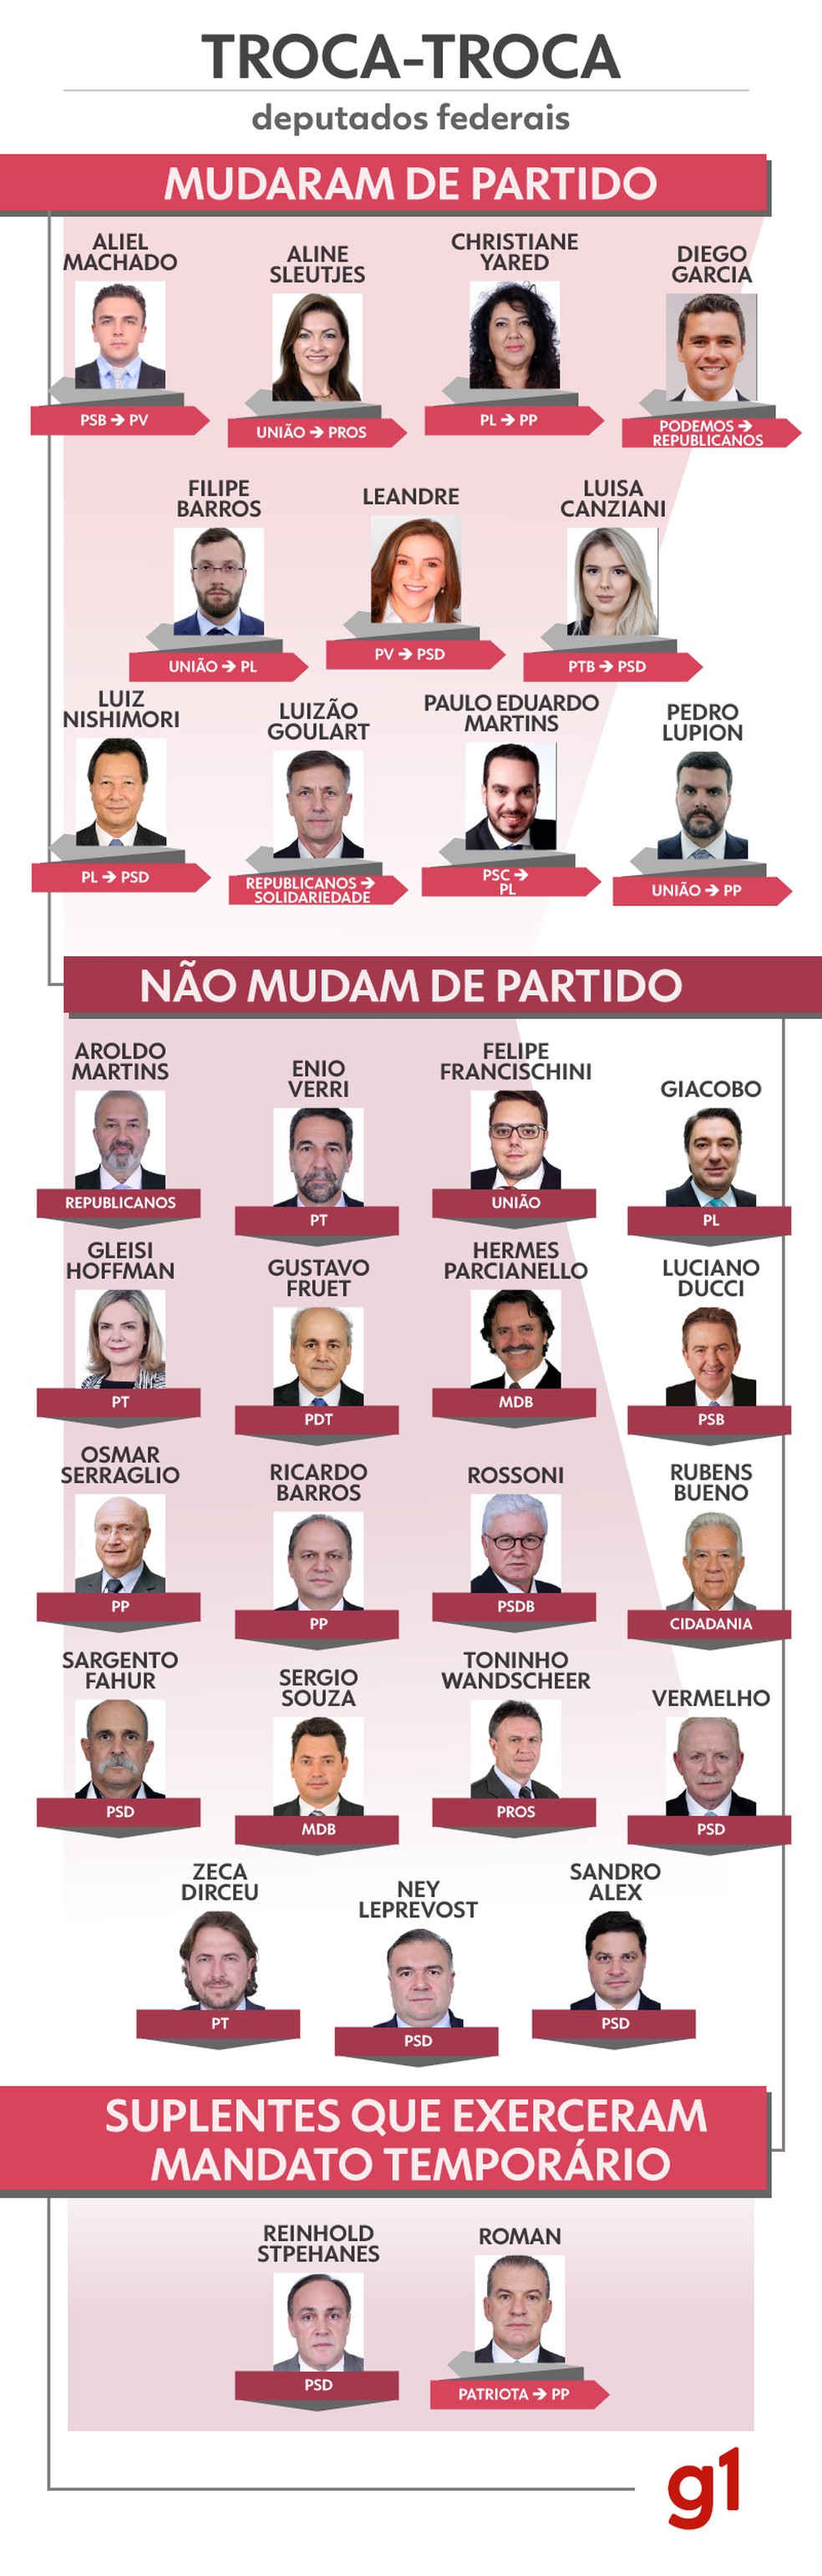 Confira no infográfico as trocas partidárias dos deputados federais do Paraná — Foto: Matheus Cavalheiro/ Artes RPC Curitiba